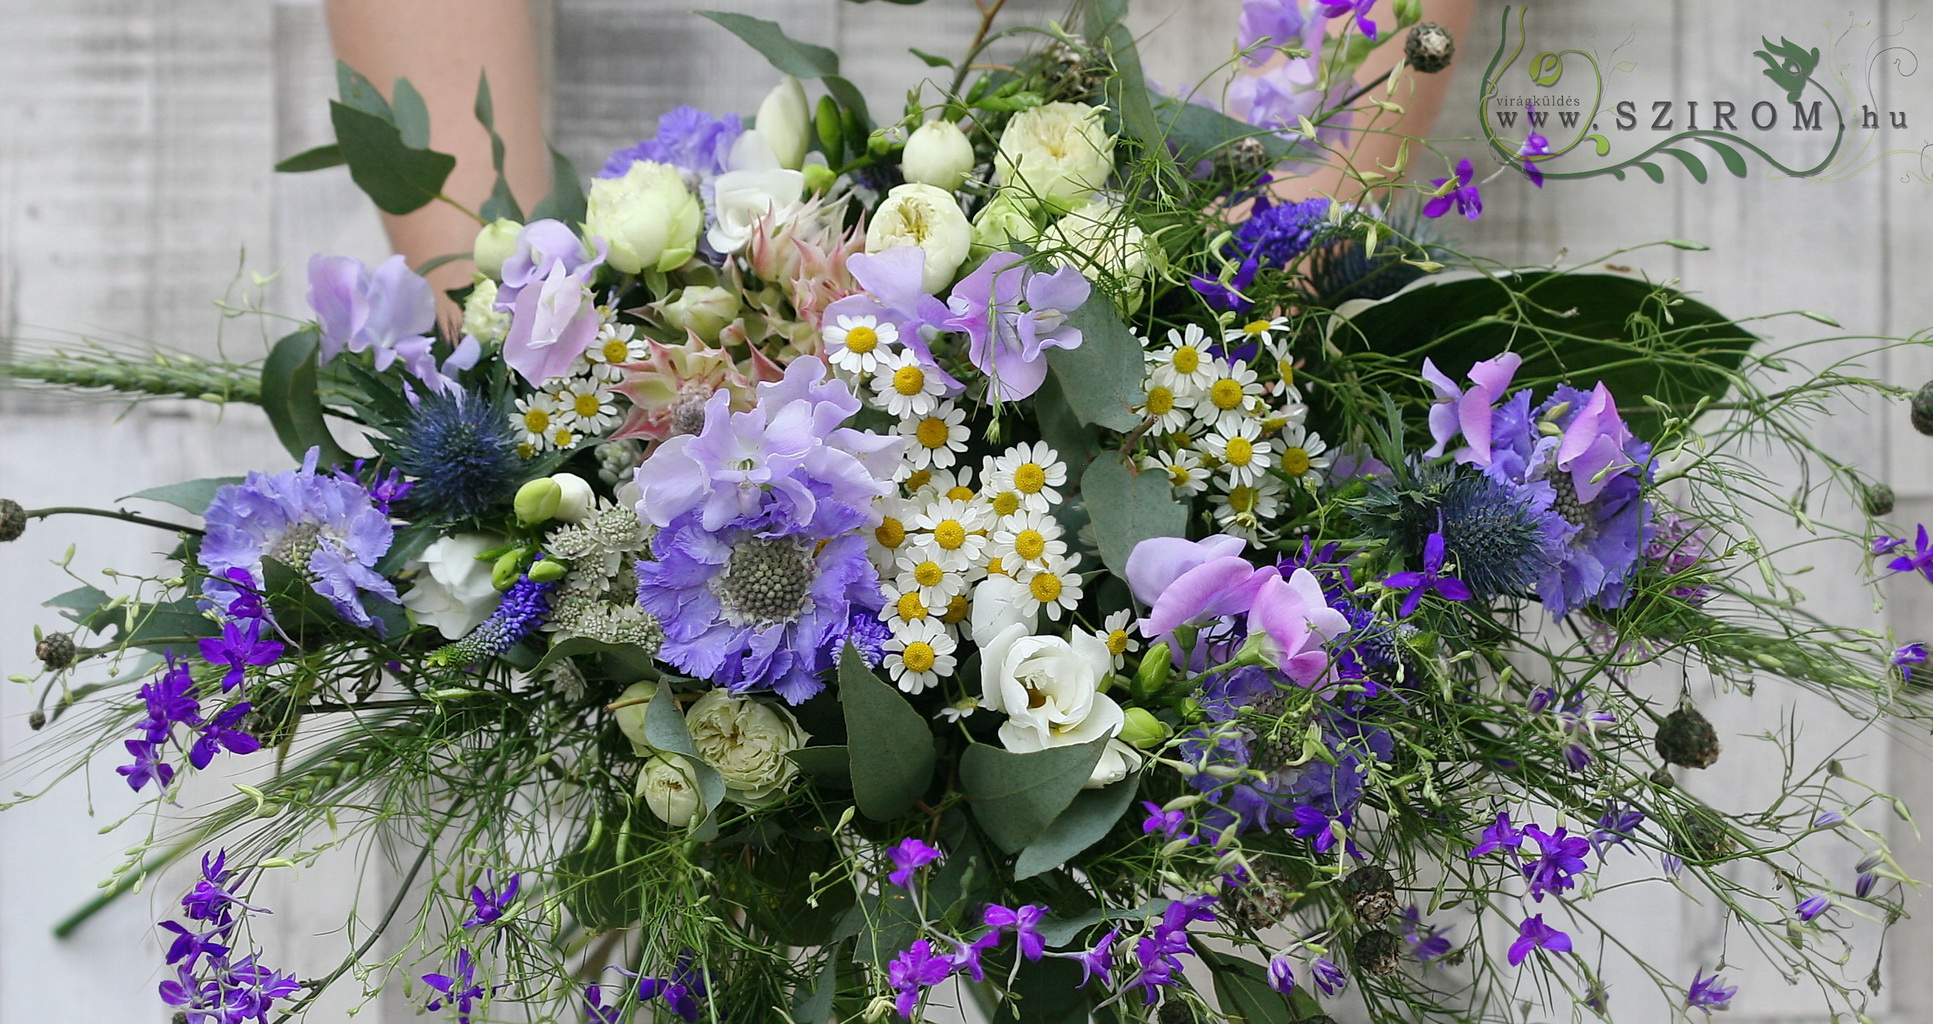 Menyasszonyi csokor rusztikus ovális vadvirágos (scabiosa, kamilla, angol rózsa, mini protea, lila,fehér)